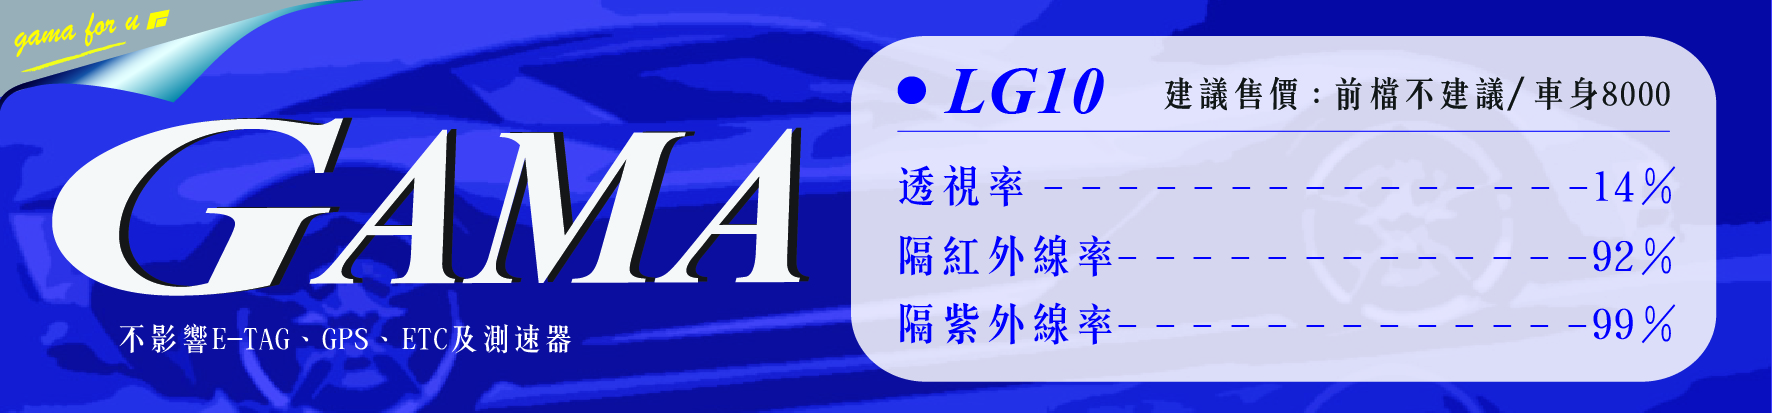 LG10隔熱紙